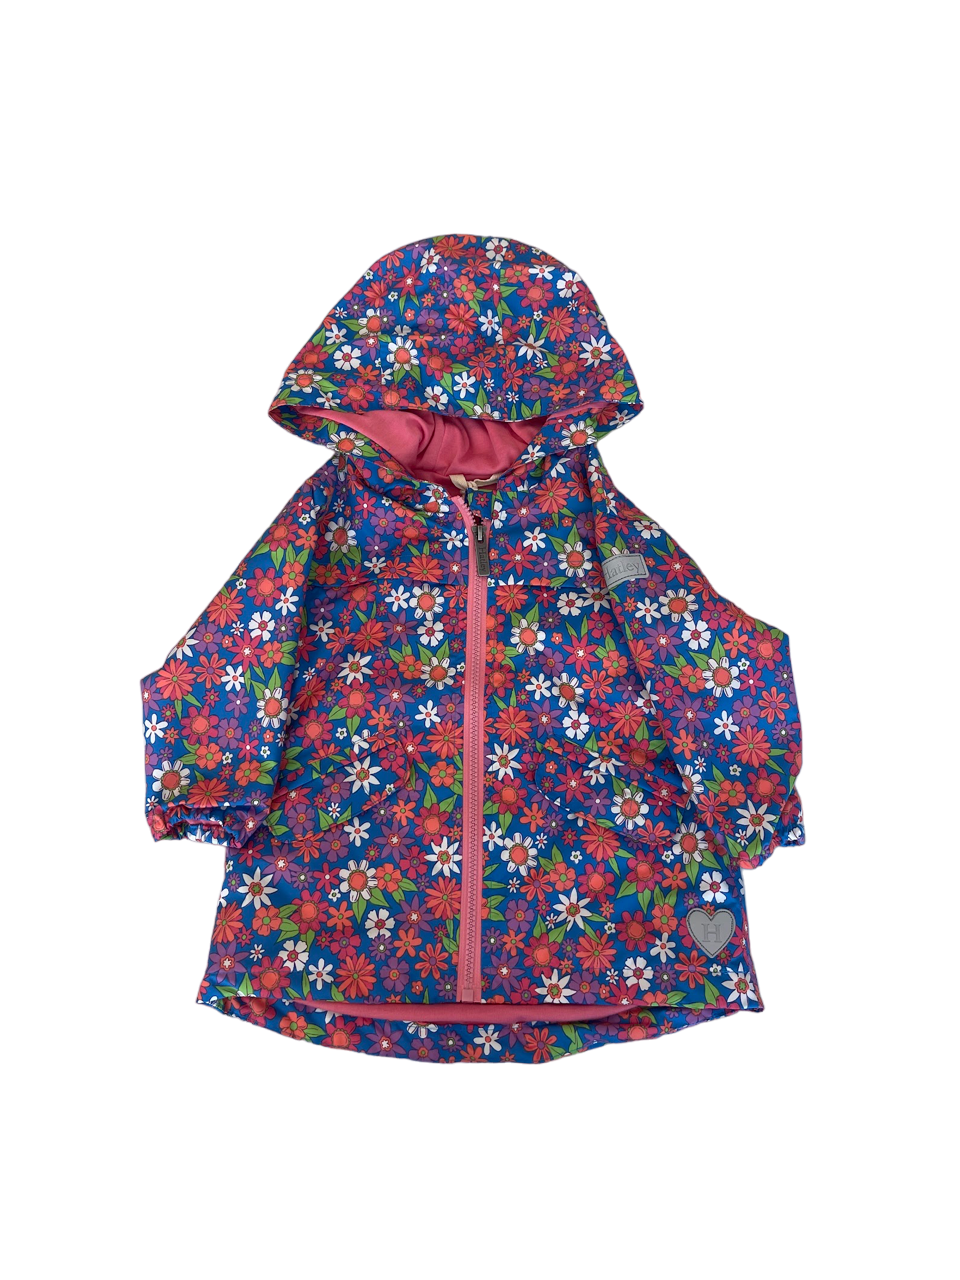 Retro Floral Raincoat